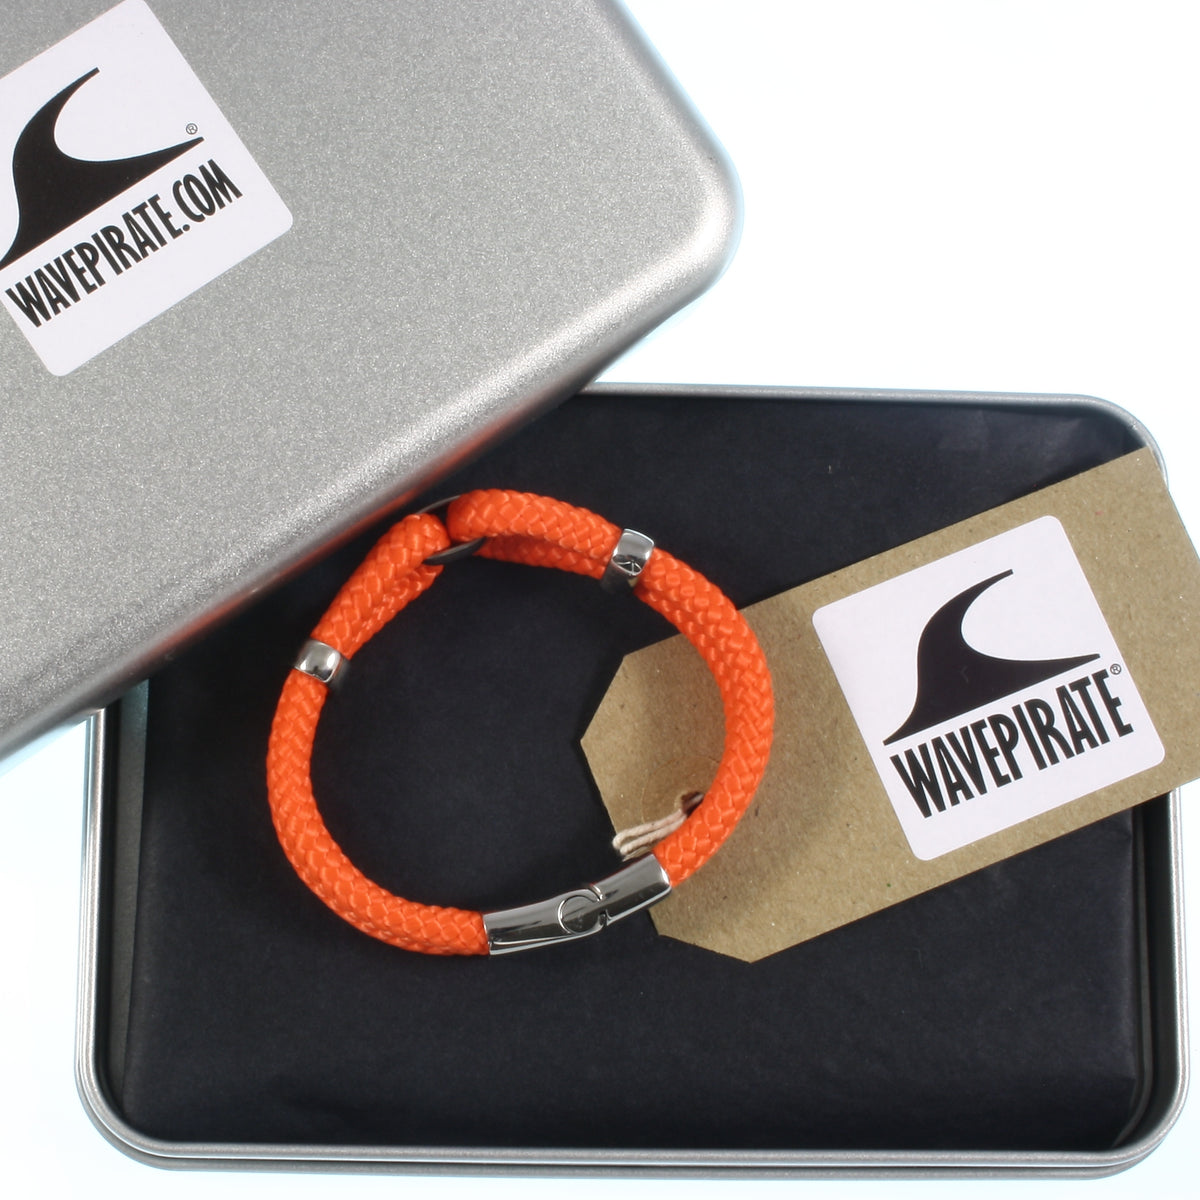 Damen-Segeltau-armband-roma-orange-geflochten-Edelstahlverschluss-geschenkverpackung-wavepirate-shop-st